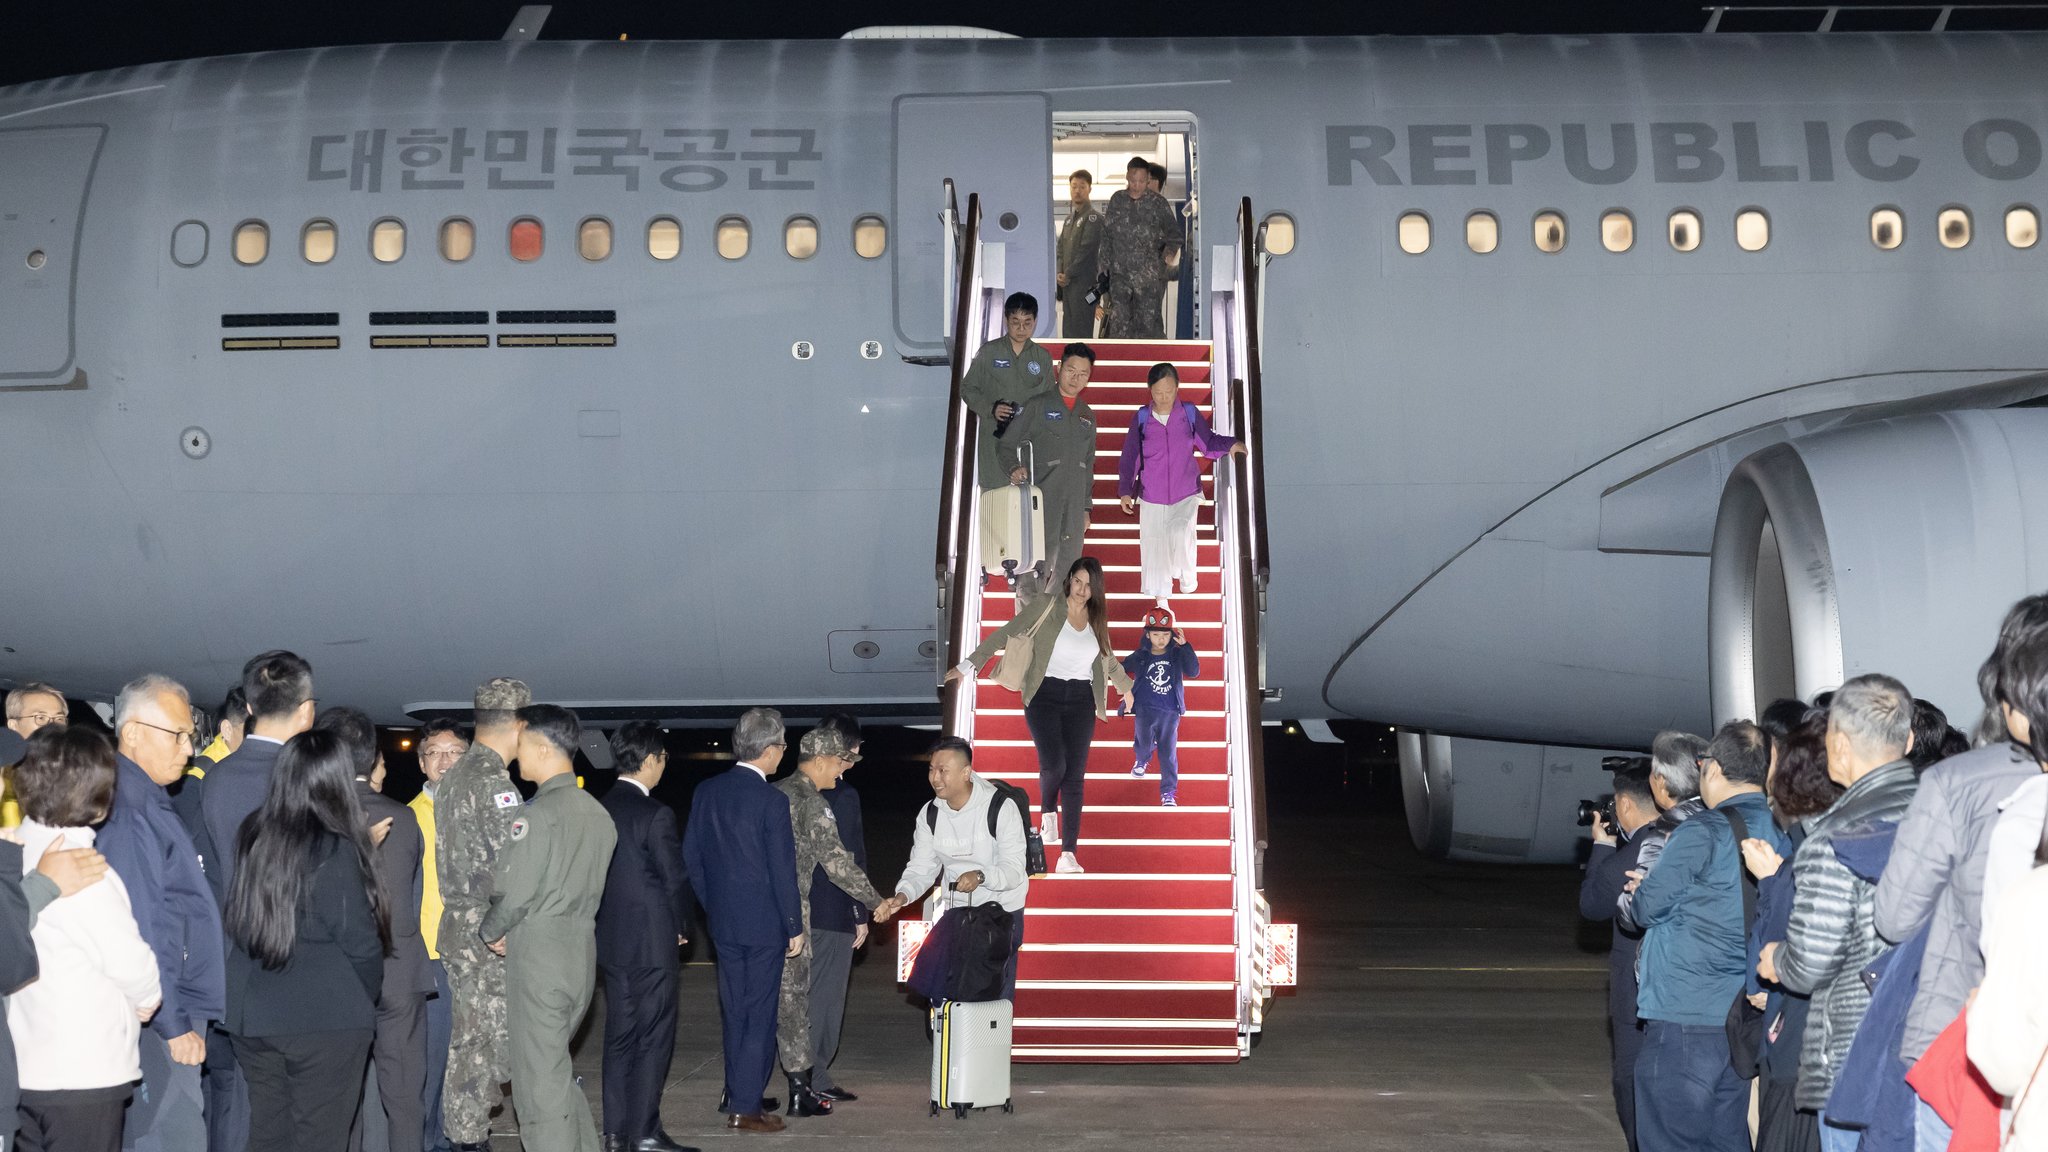  하마스와 이스라엘 간 전쟁으로 현지에서 고립된 우리 국민의 안전을 위해 정부가 이스라엘로 급파한 군 수송기(KC330)가 14일 오후 성남 서울공항으로 무사히 착륙했다. 전민규 기자